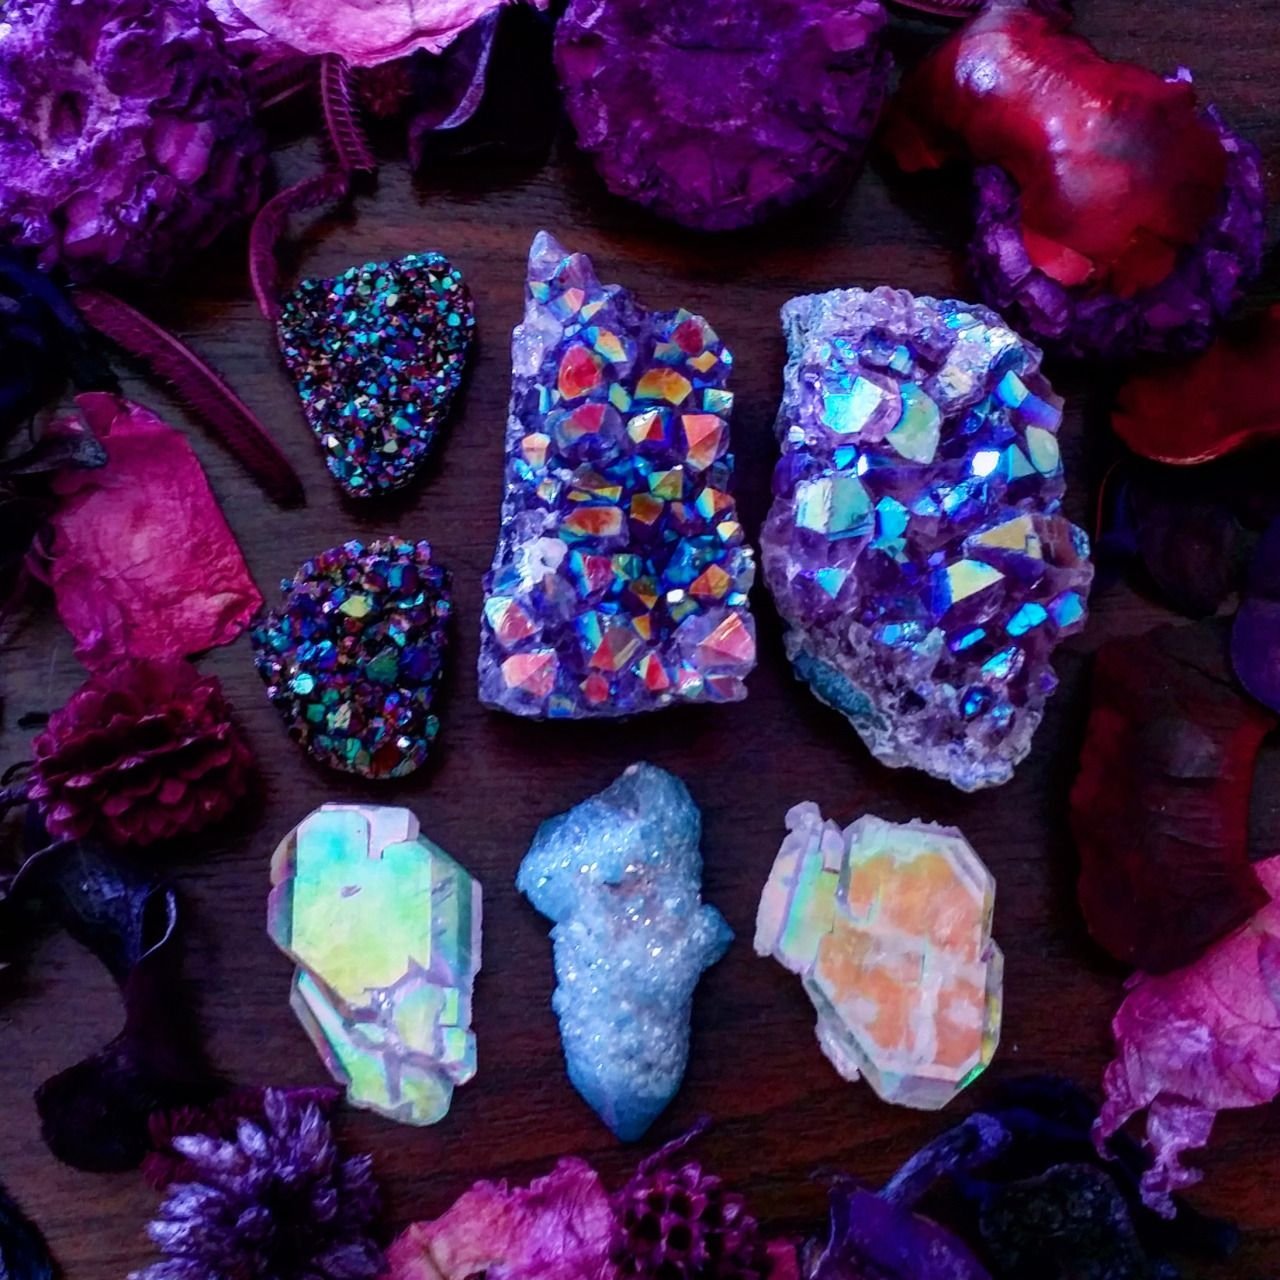 Картинки самоцветов. Минералы и Самоцветы | Зимина 2001. Самоцветы минералы Кристалл. Красивые природные камни. Коллекция красивых камней.